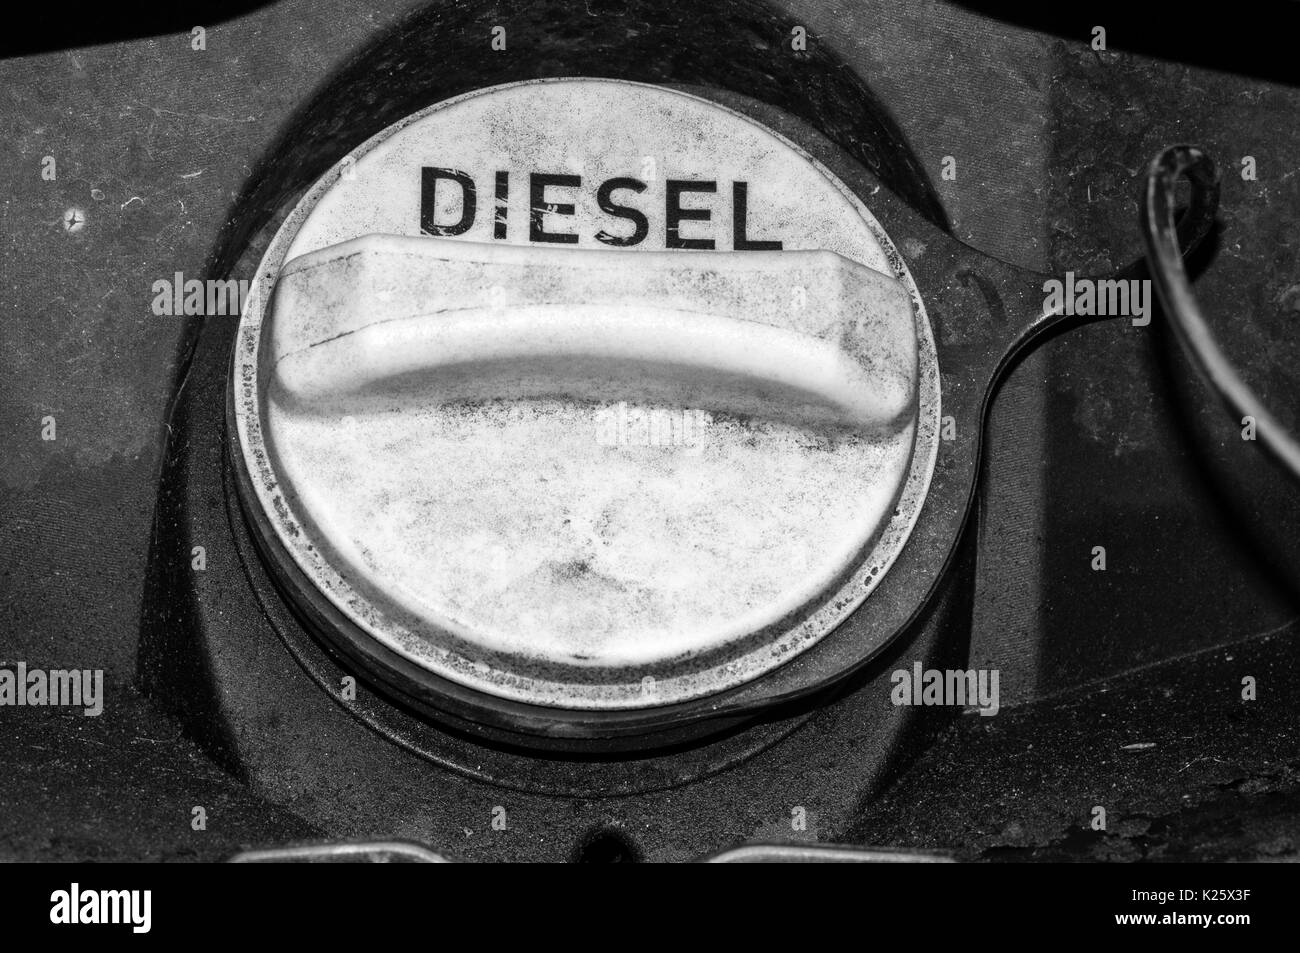 Eine Schwarzweiß-Fotografie der unordentlichen Tankdeckel eines Diesel getankt Land Rover. Siehe K0Y 4EM für Farbe Version. Stockfoto